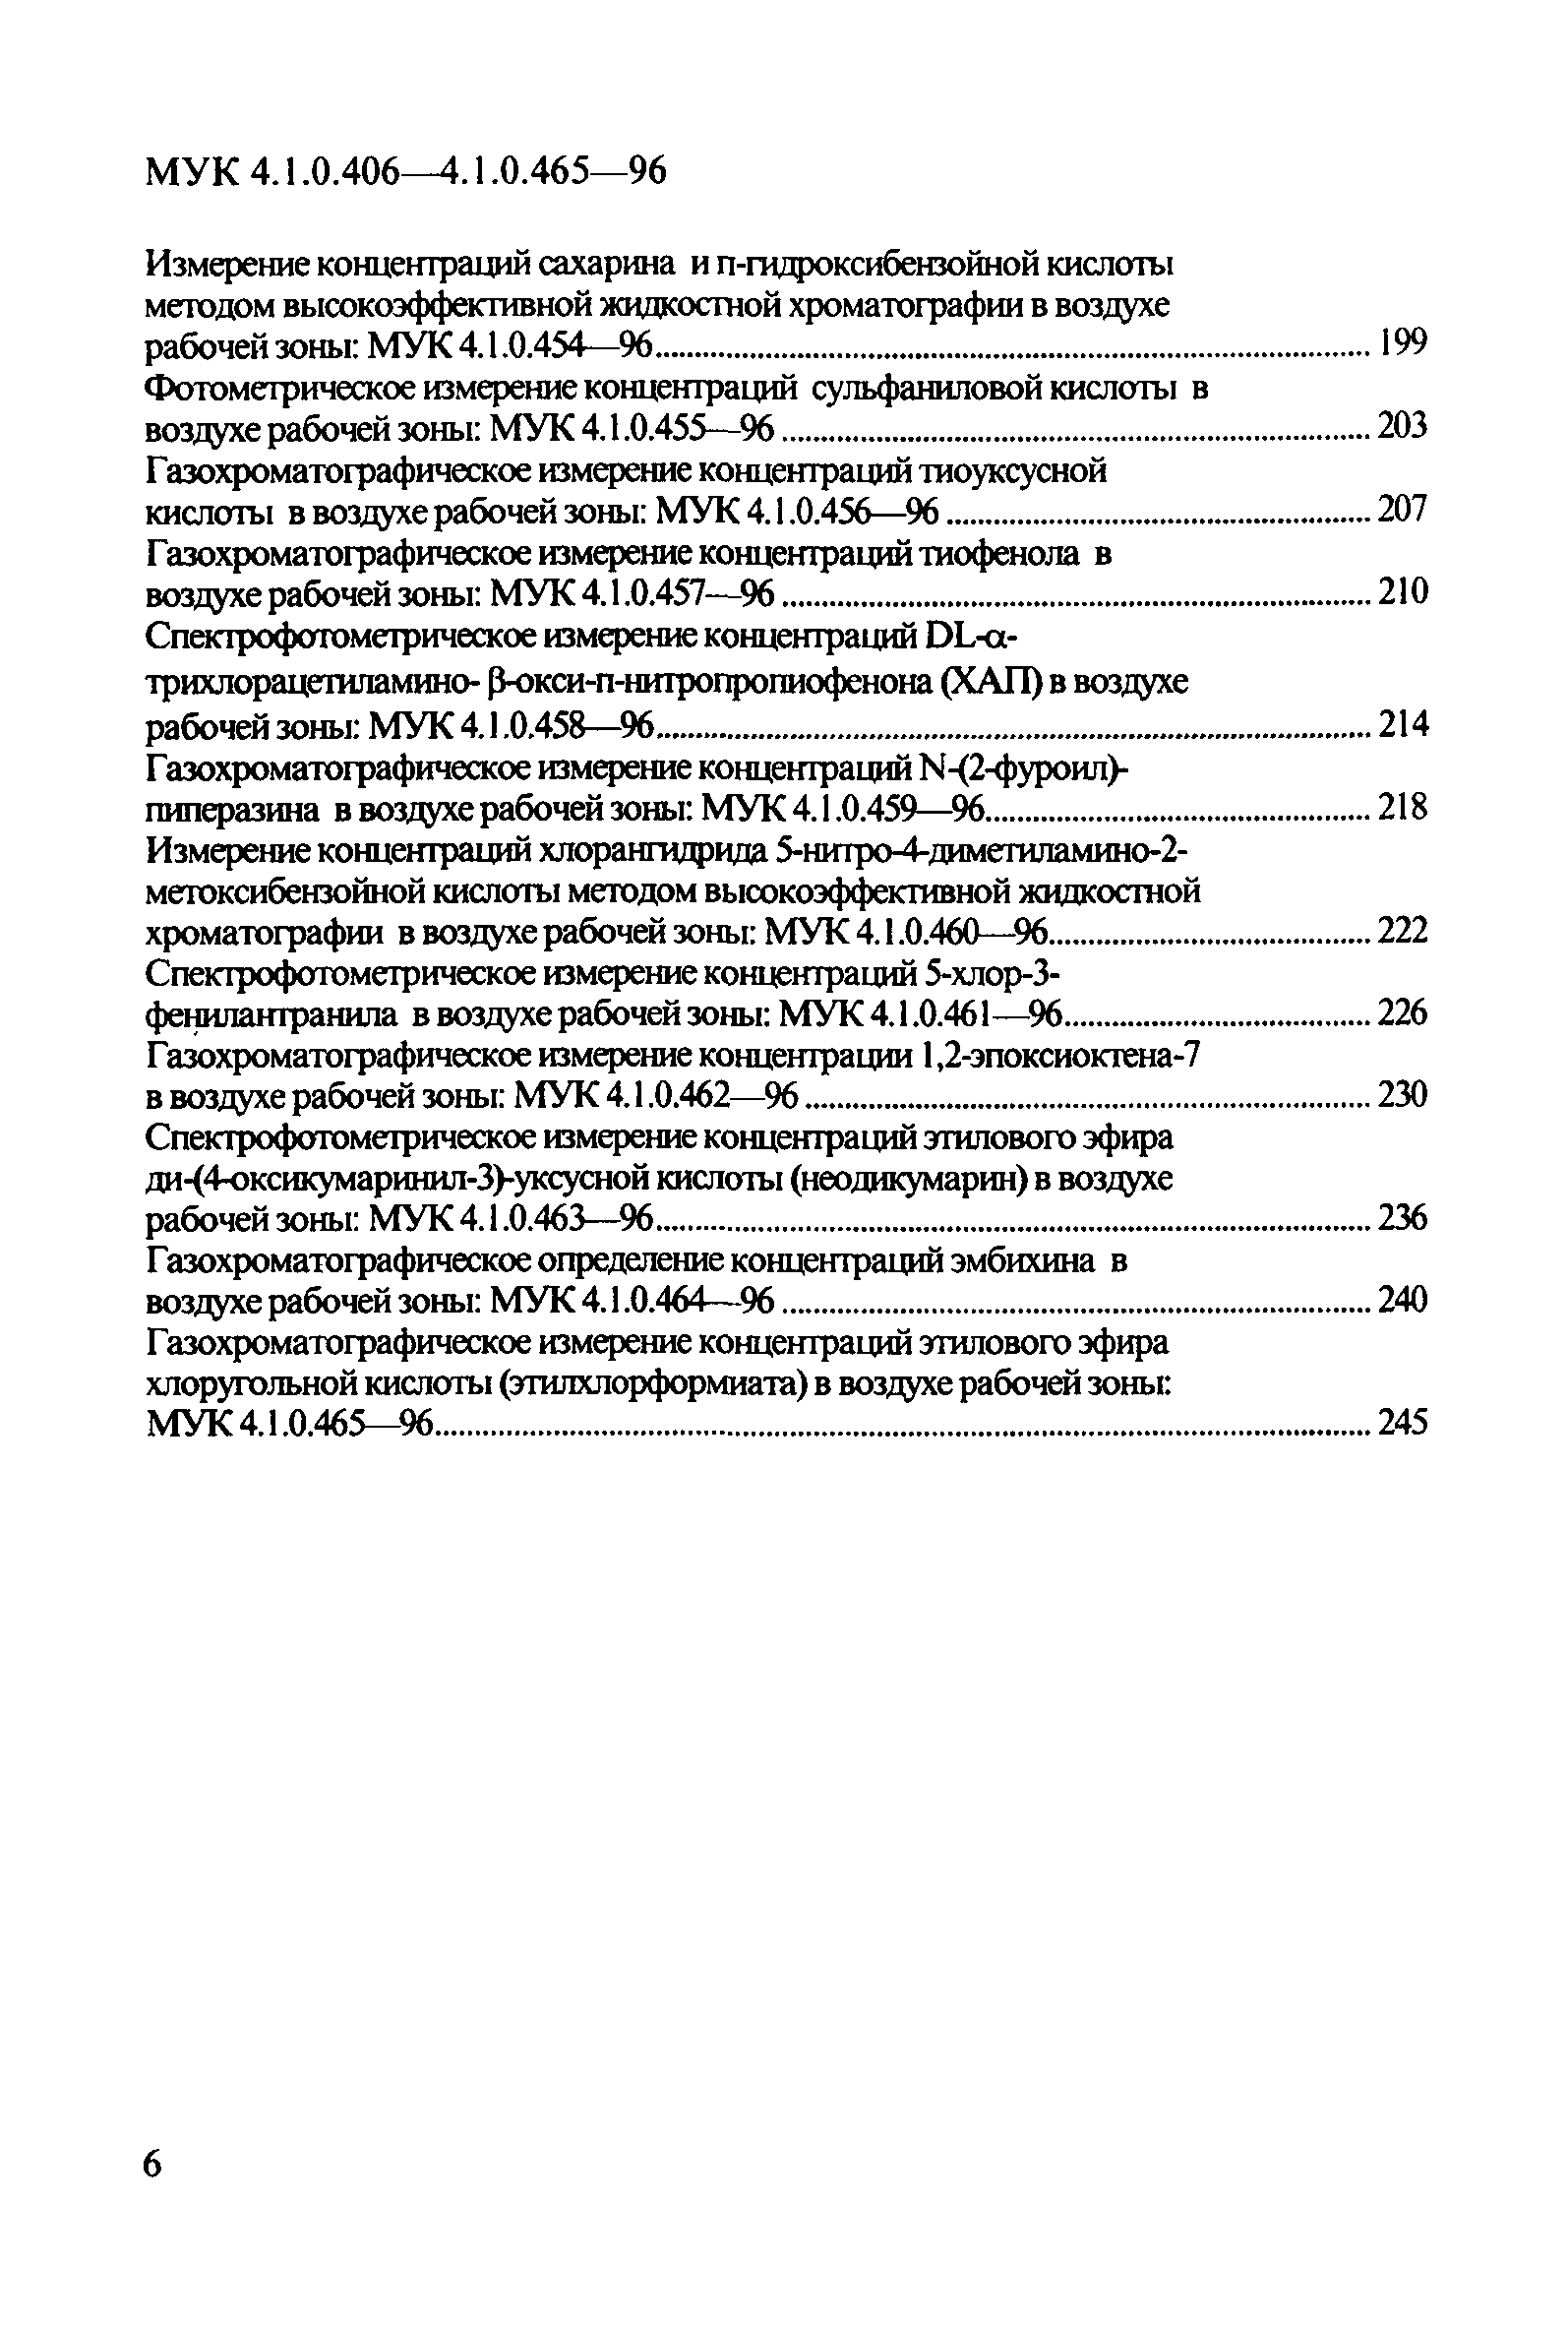 МУК 4.1.0.410-96